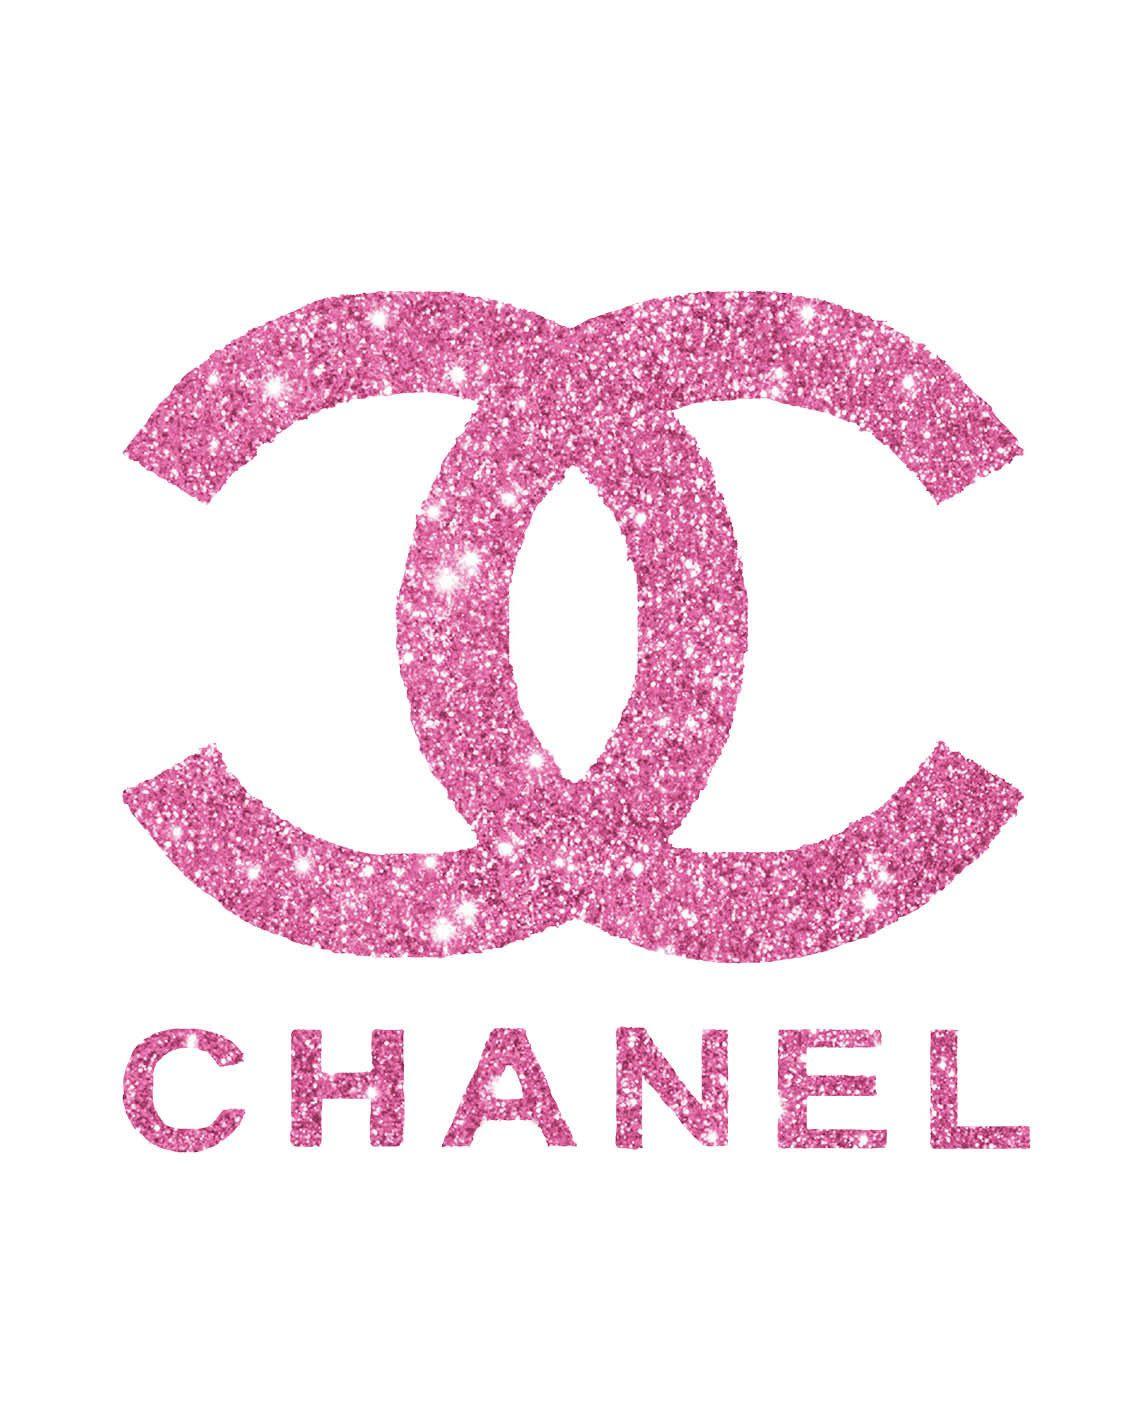 1134x1422 Biểu trưng Coco chanel màu hồng năm 2020. Hình nền Chanel, Trang trí Chanel, Tranh in nghệ thuật Chanel